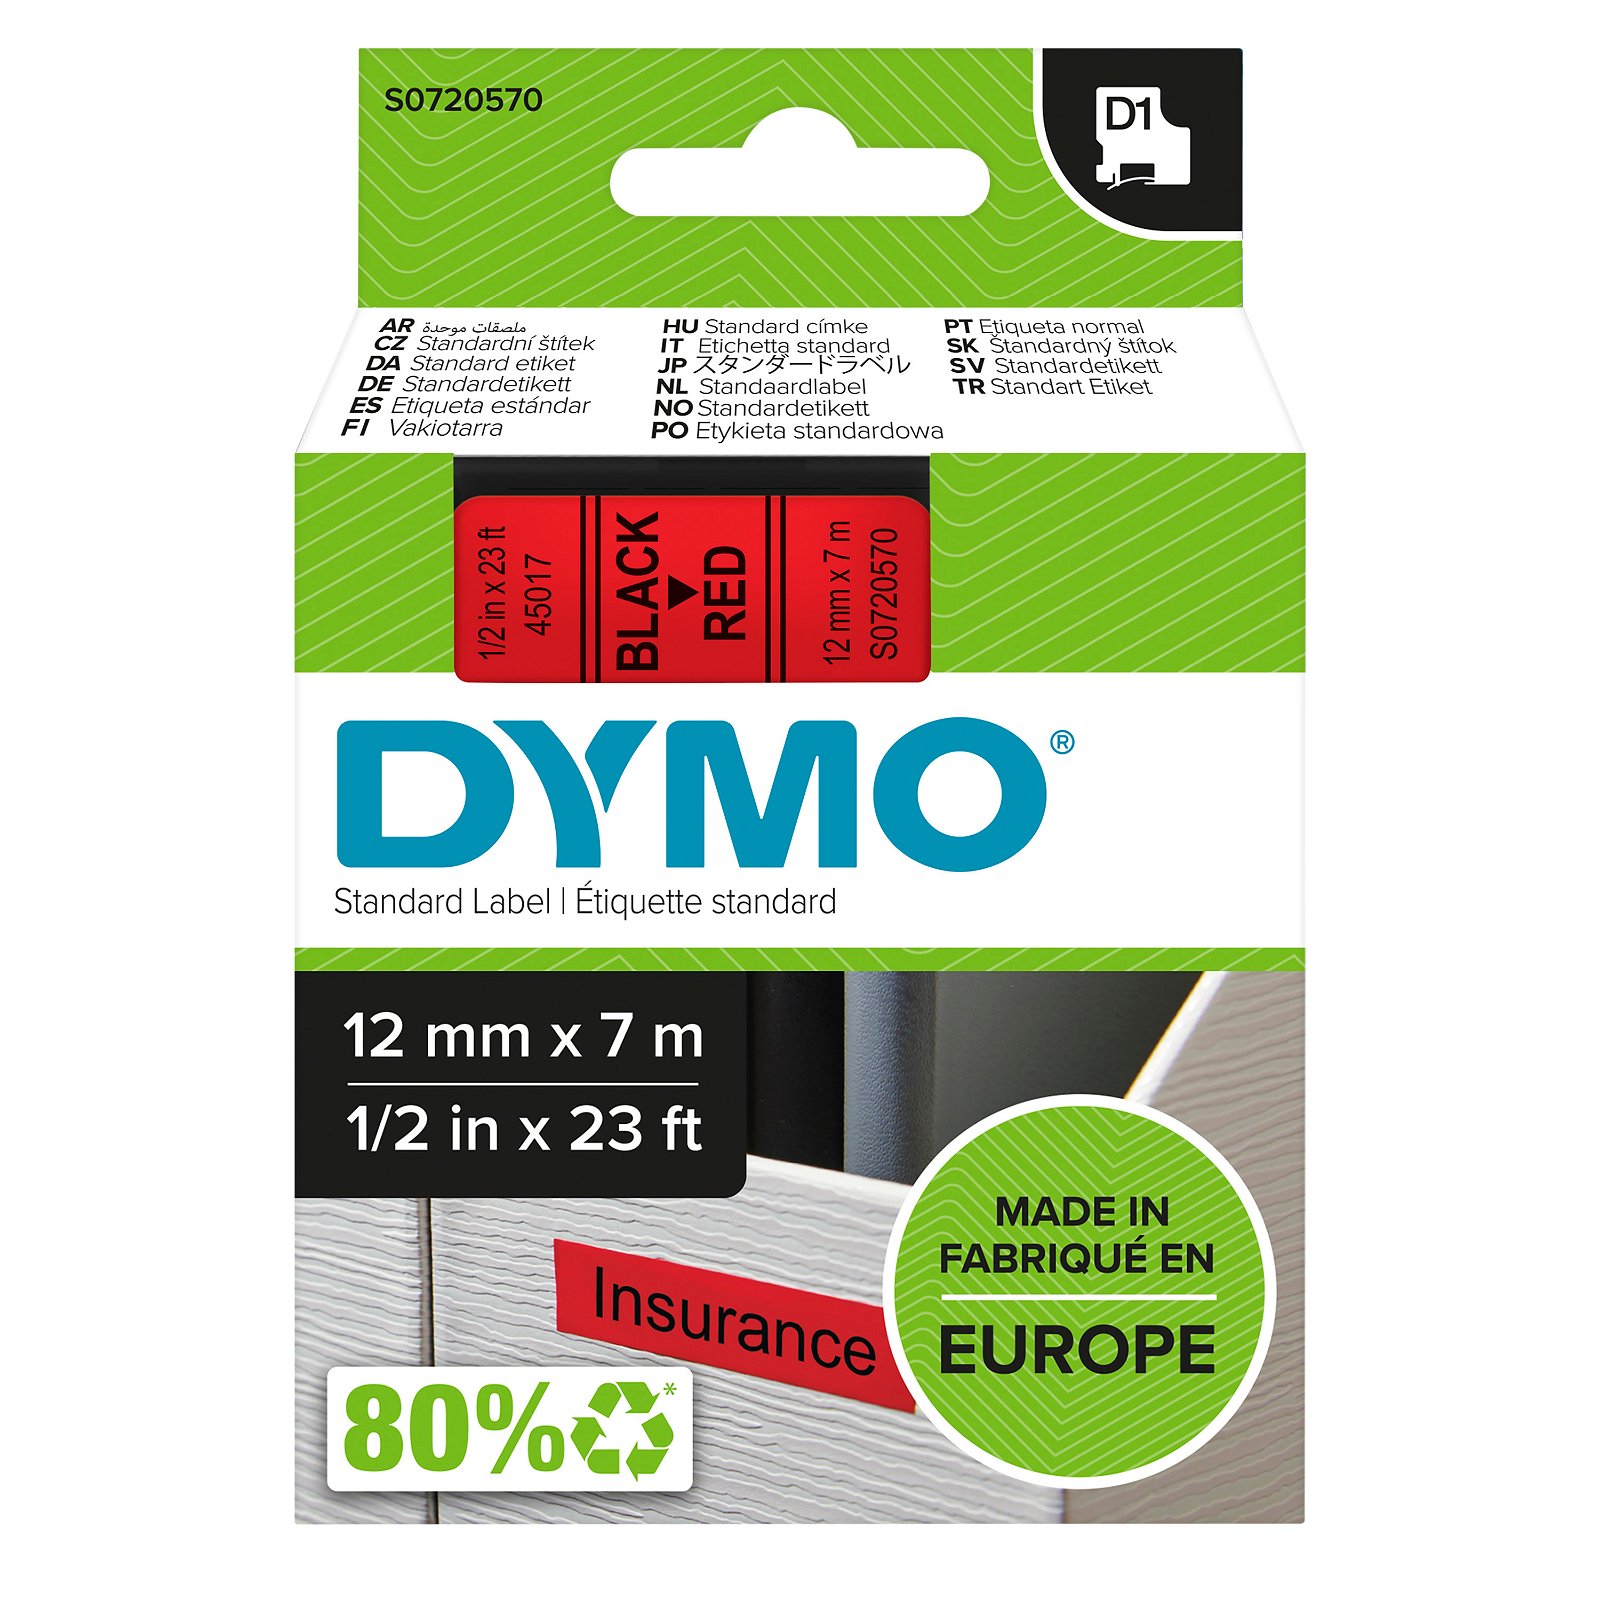 Dymo D1 standard tapekasette 12 mm sort;rod Polyester